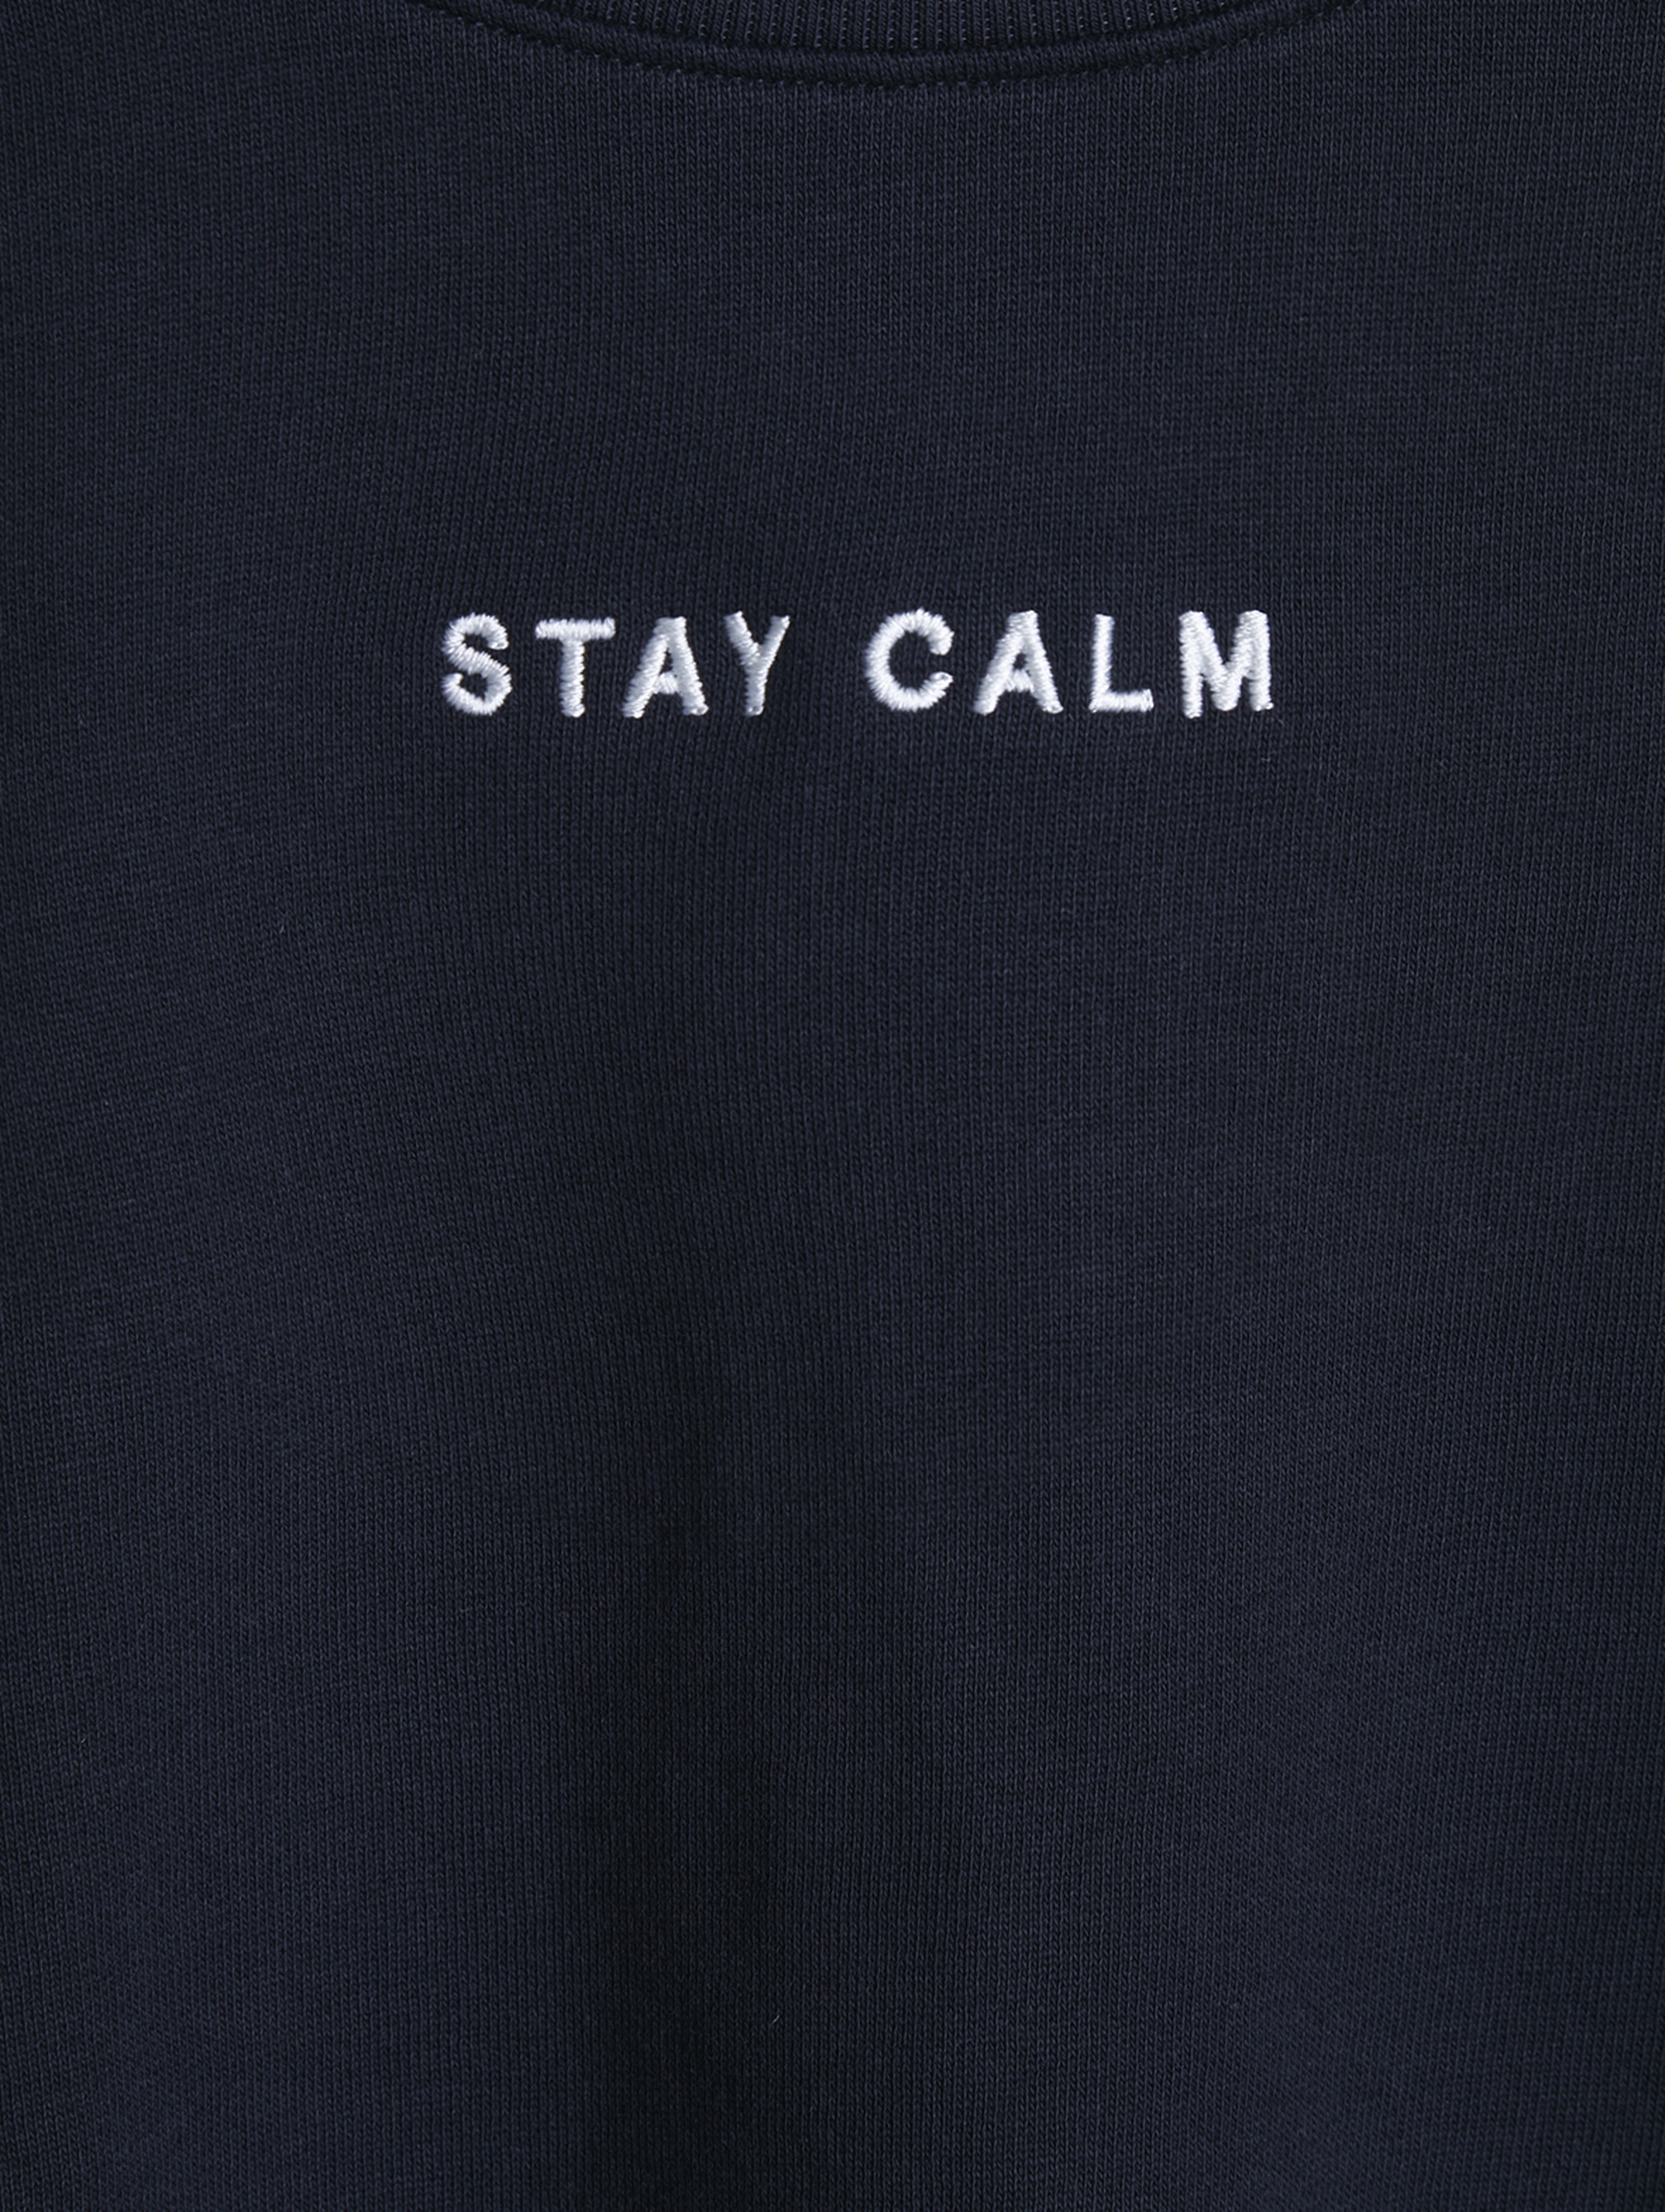 Czarna bluza dziewczęca z napisem - Stay Calm - Limited Edition